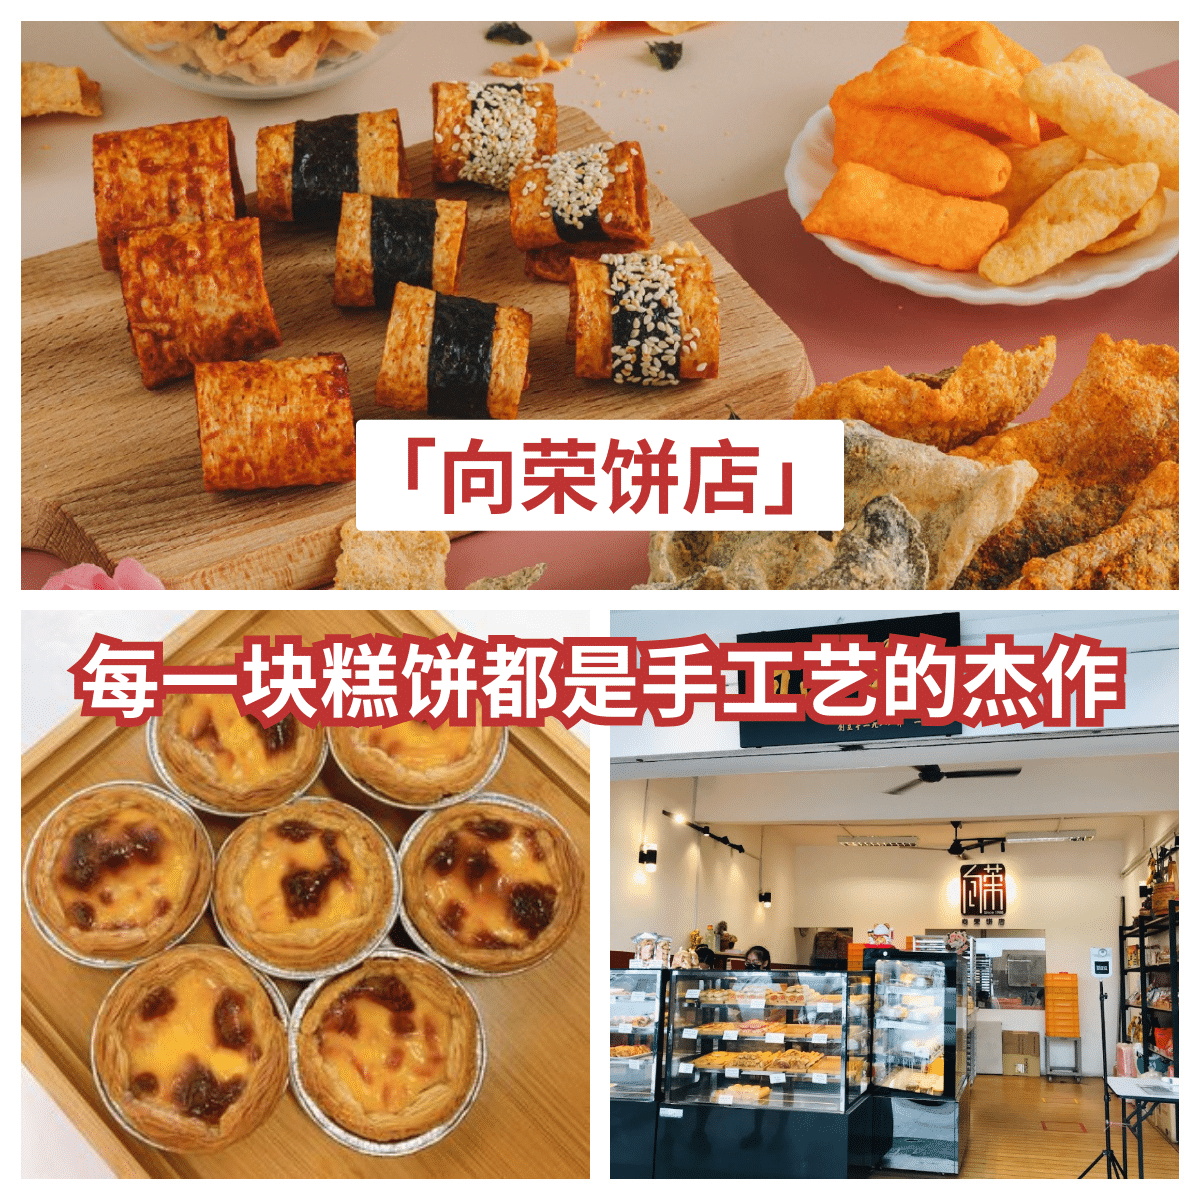 “皇后区的甜蜜地标：「 向荣饼店 」—35年传统糕饼的极致诱惑！”